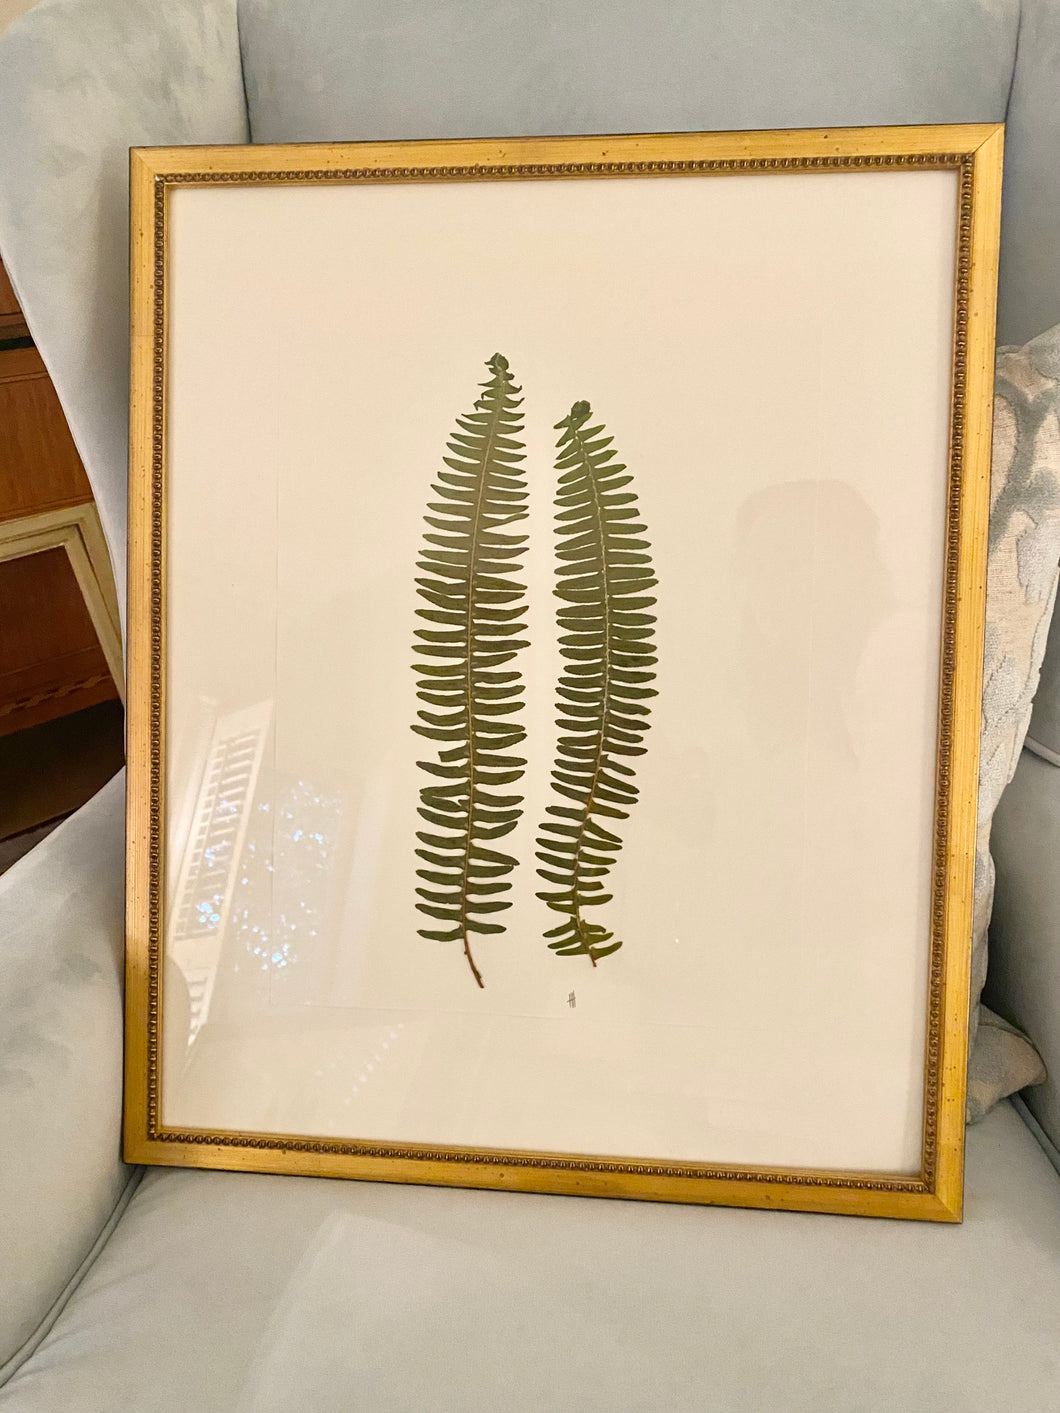 17x21 custom framed botanical